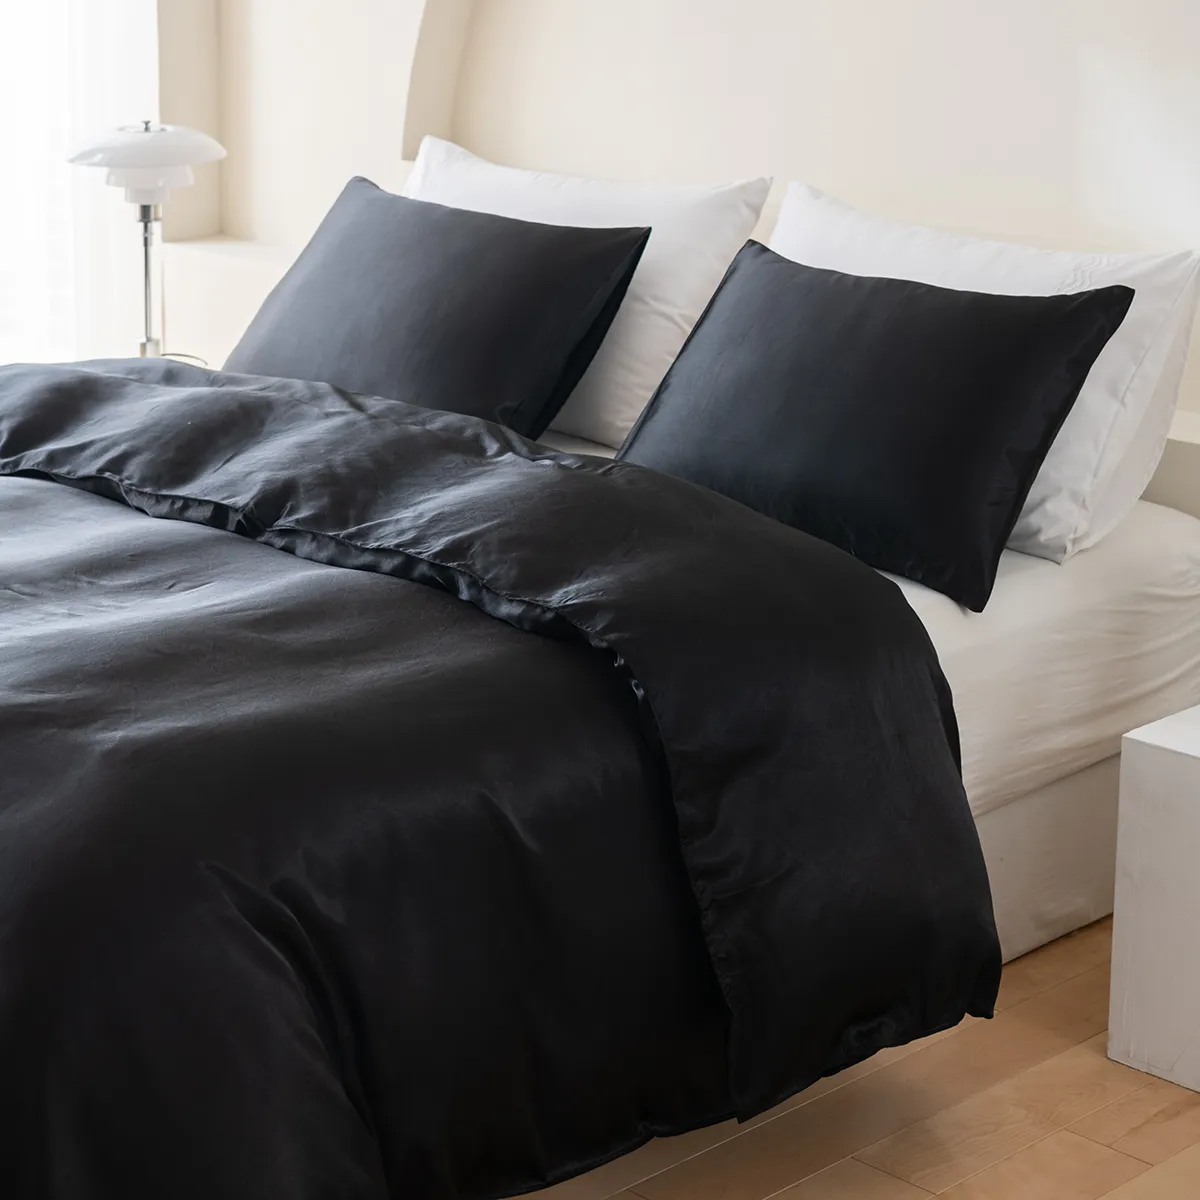 2/3 piezas de ropa de cama de satén de color sólido suave y cómodo, que incluye funda nórdica y fundas de almohada Negro big image 1